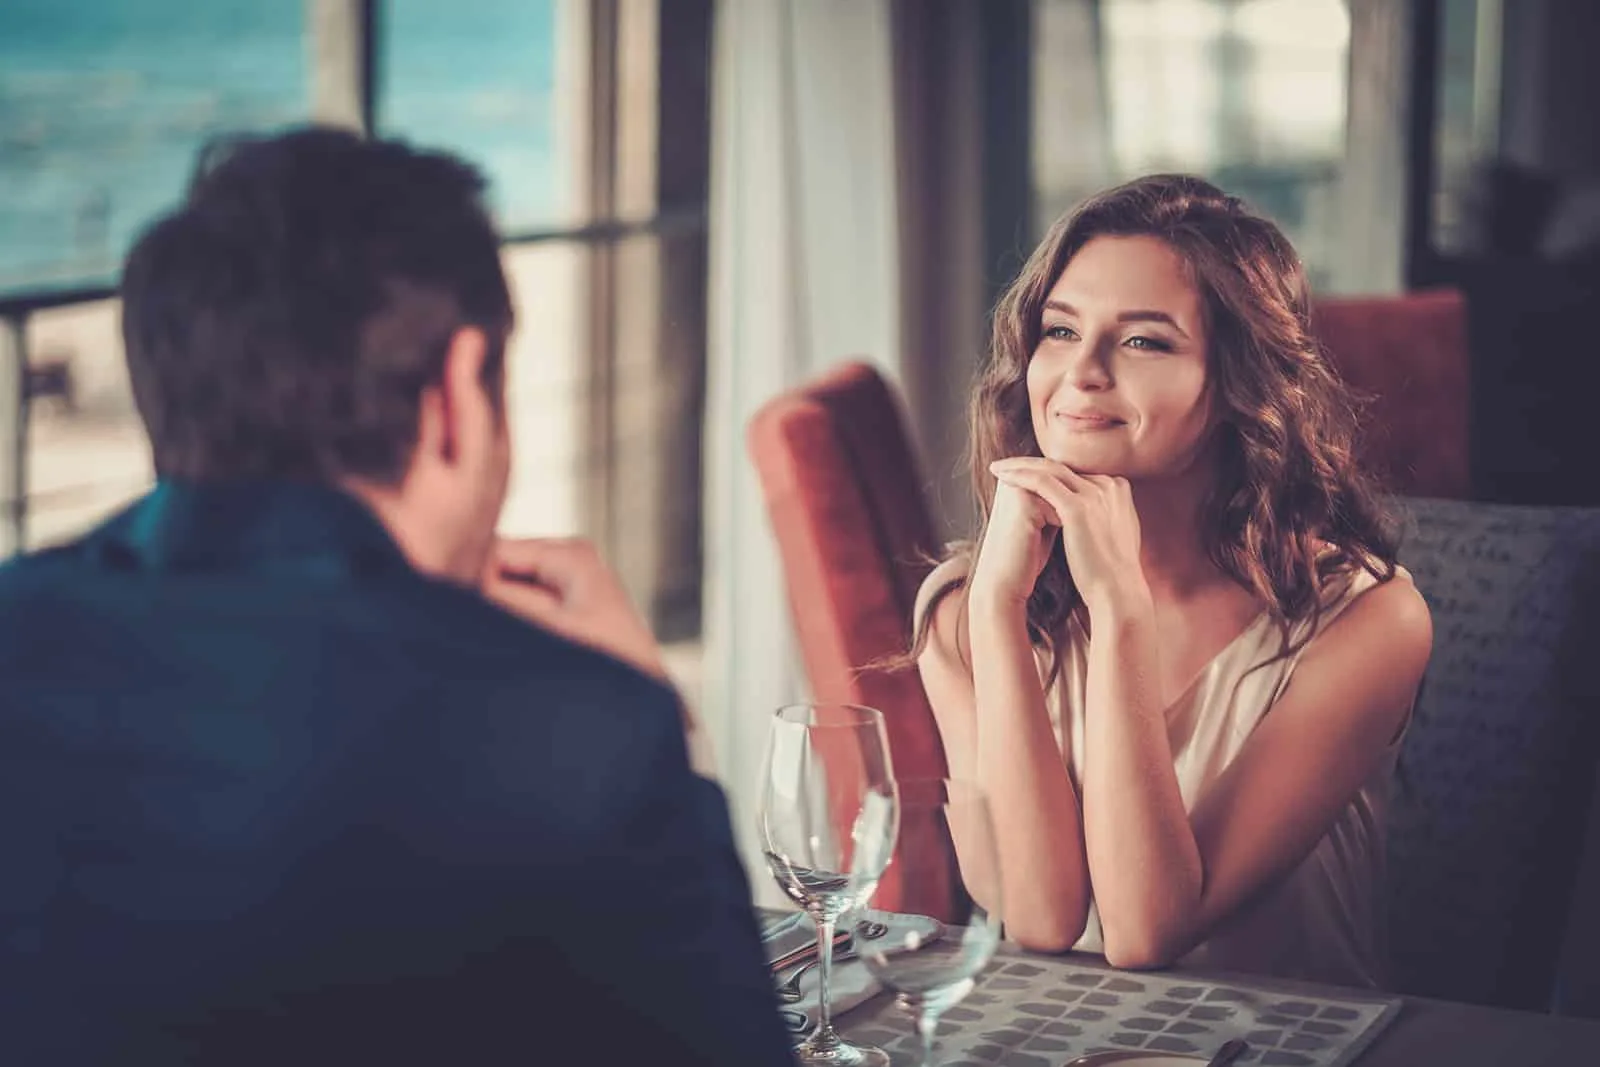 eine positive Frau, die einen Mann ansieht, der mit ihr am Tag in einem Restaurant spricht